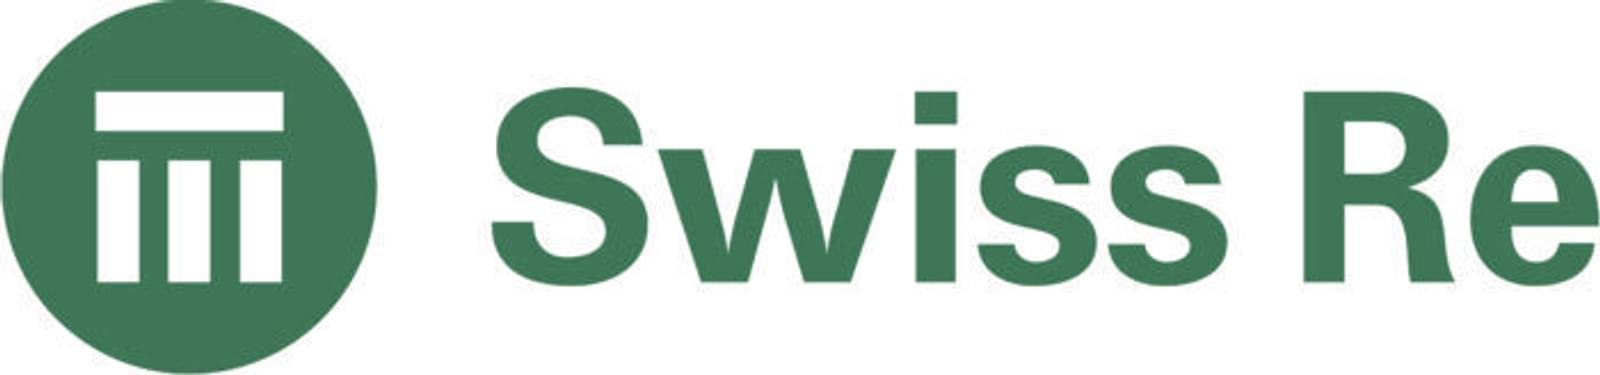 Swiss re logo 1